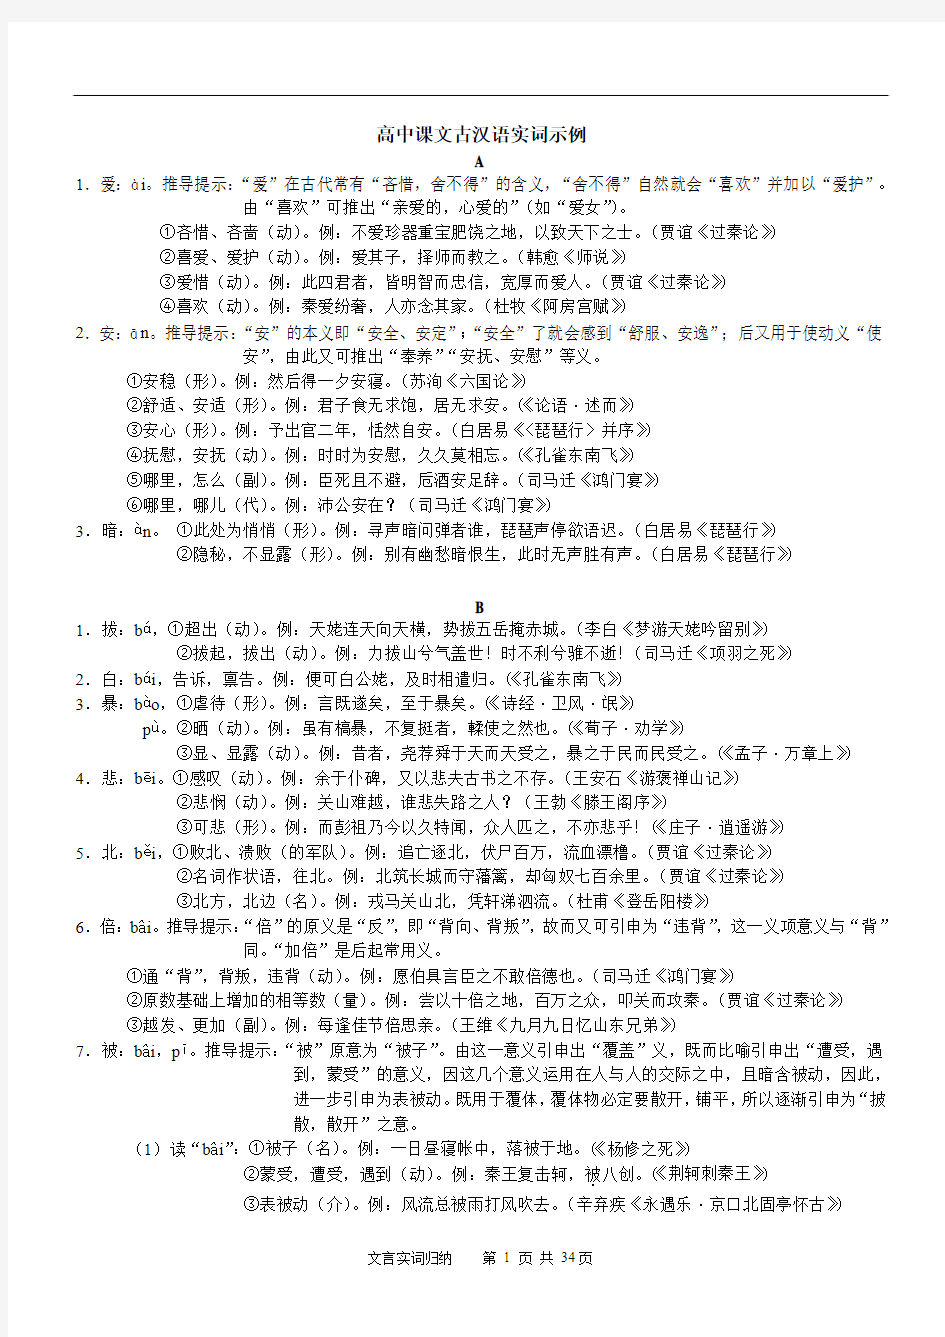 高中语文古汉语实词示例